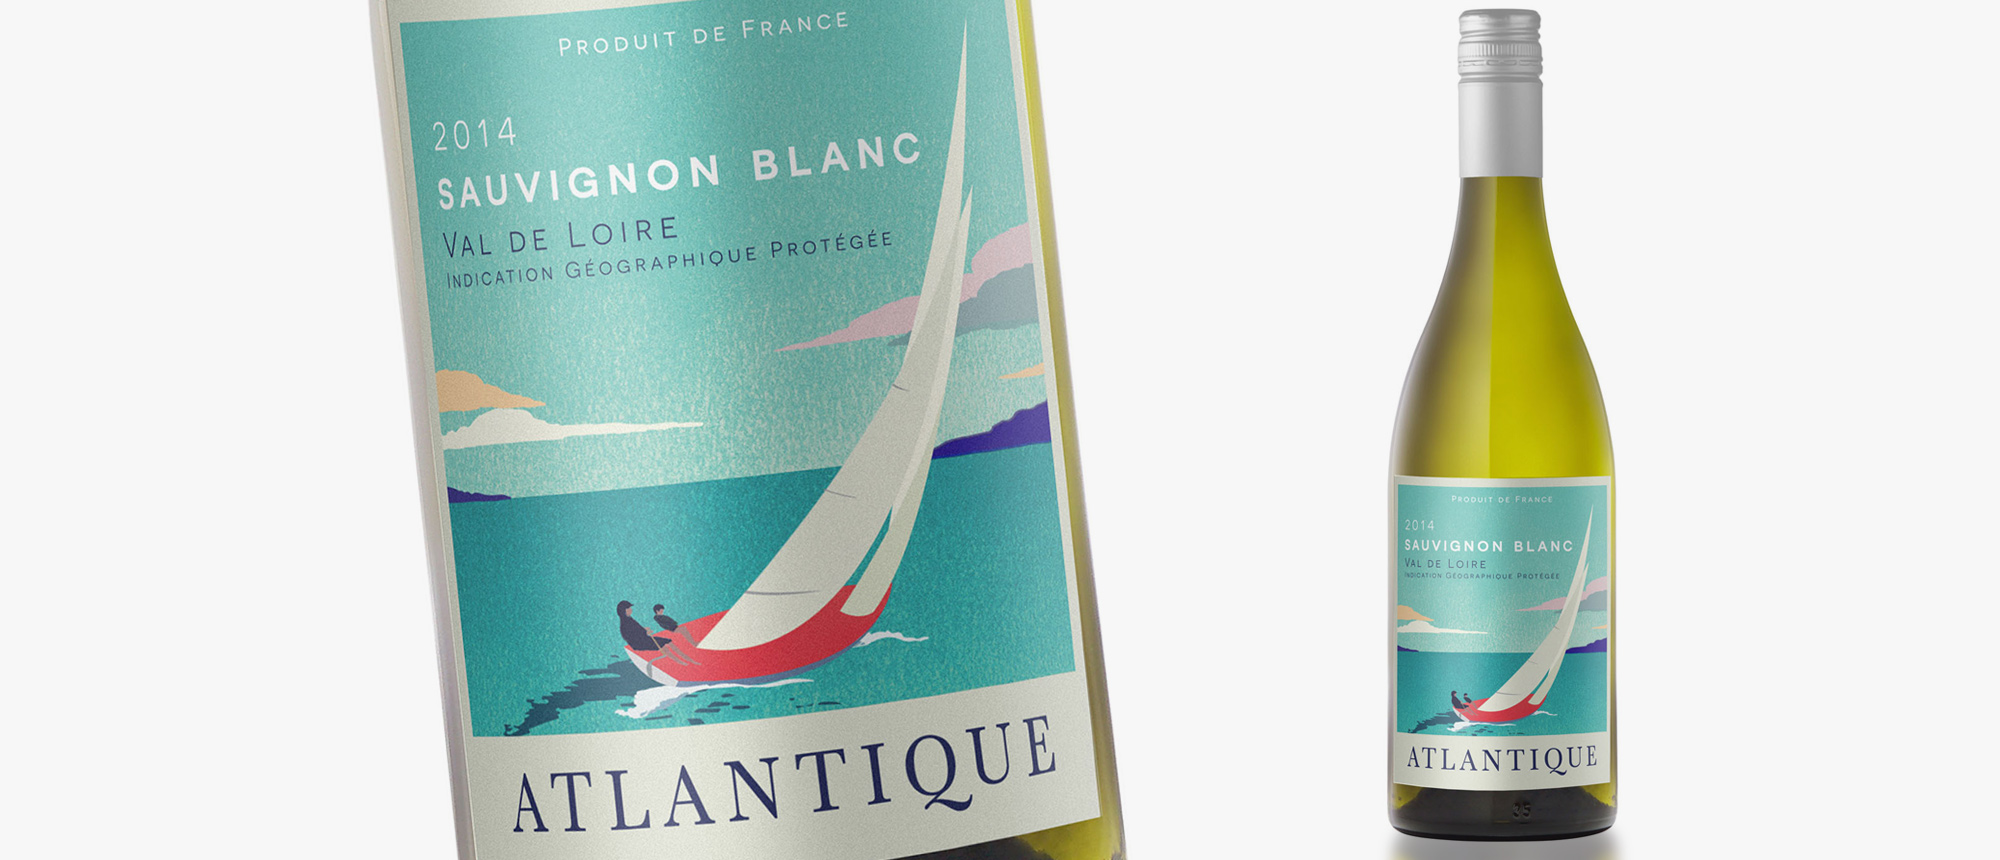 Wine label design for Atlantique - sailing poster illustration